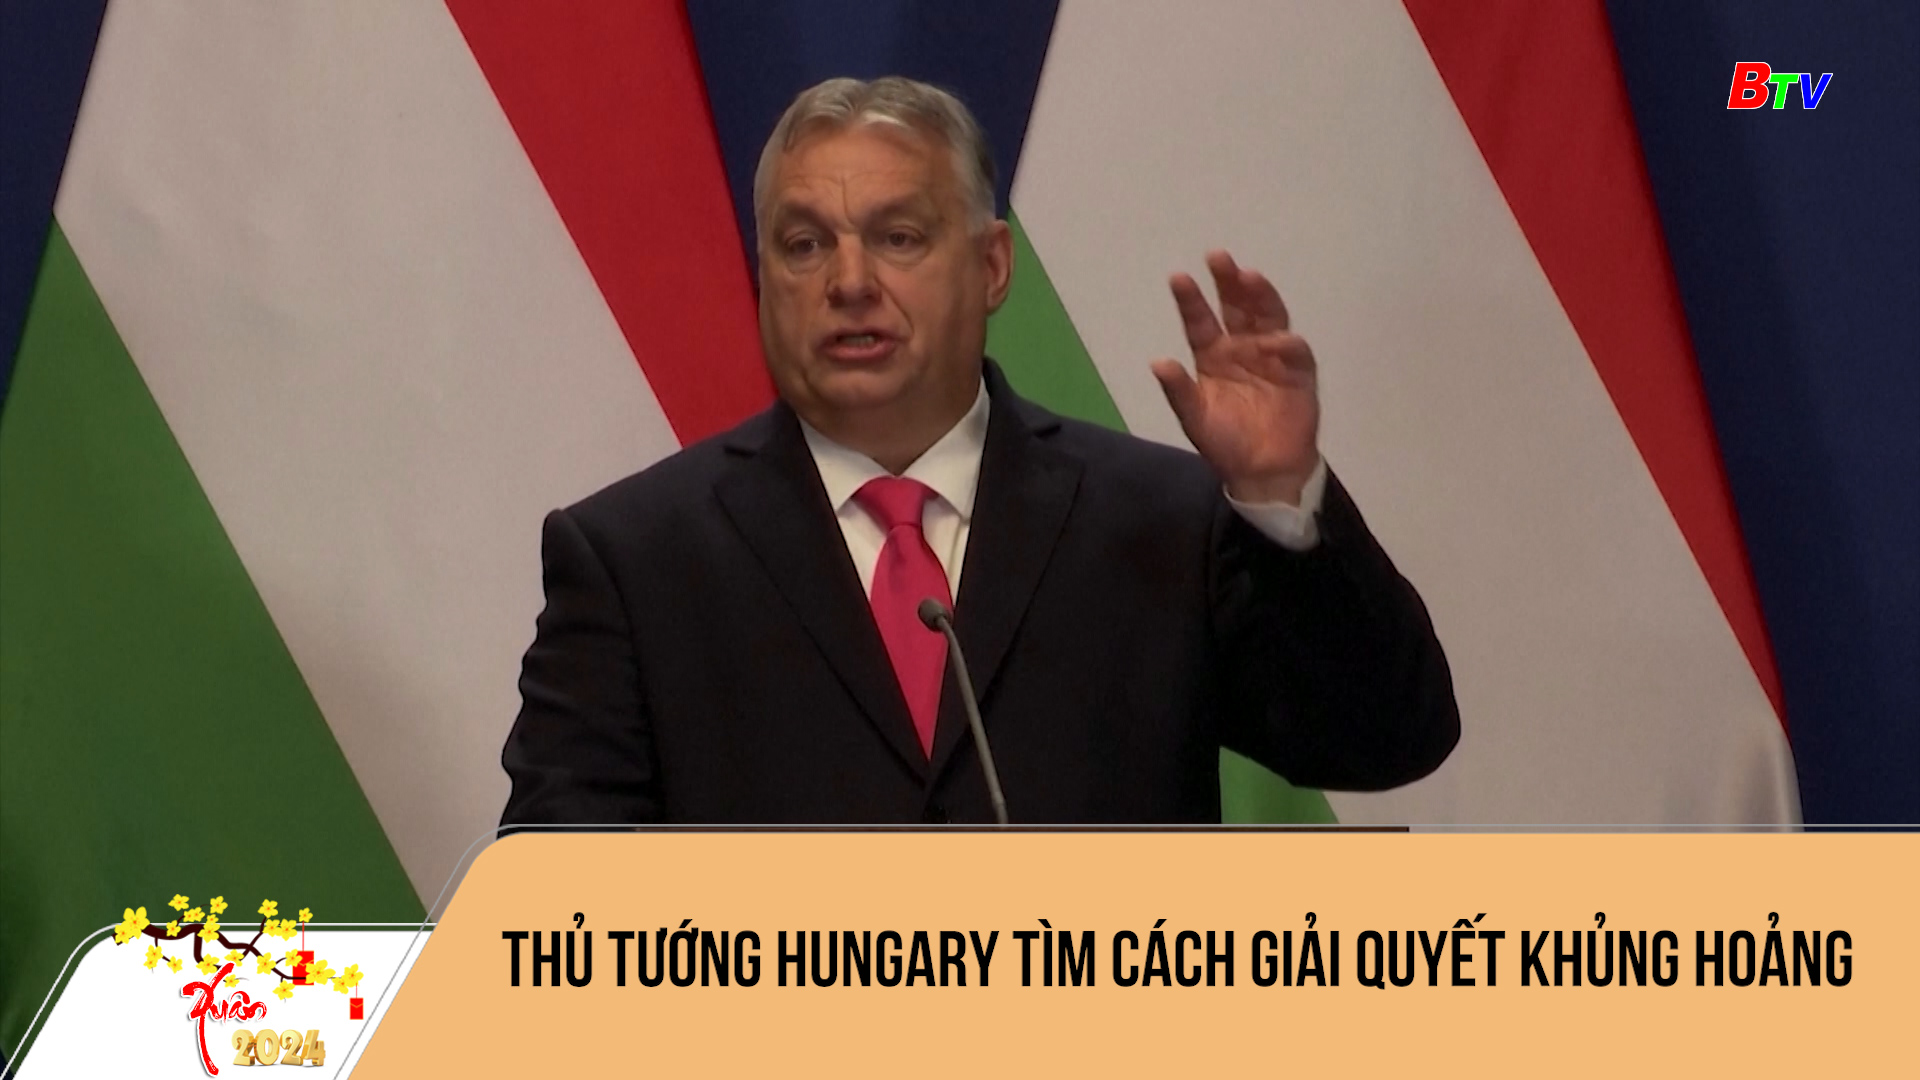 Thủ tướng Hungary tìm cách giải quyết khủng hoảng